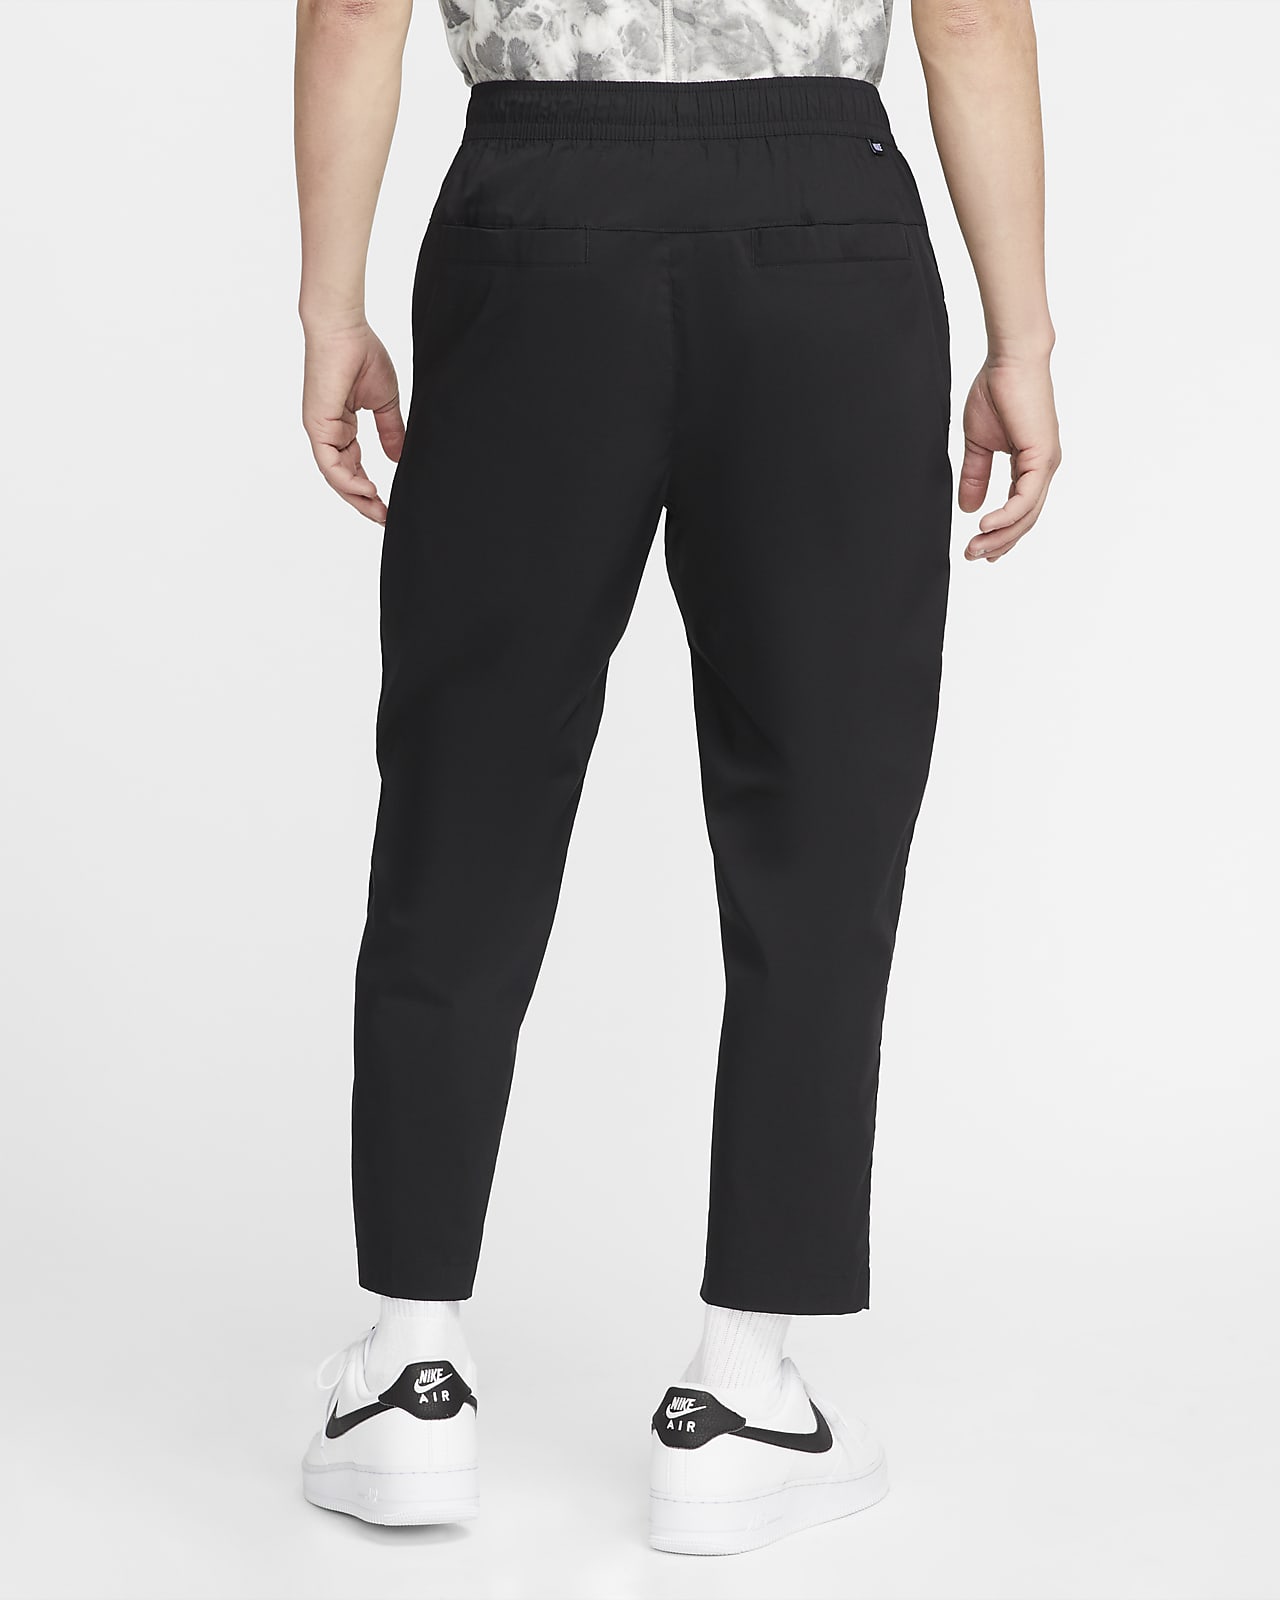 Nike Sportswear Woven Pants - Aq1895-301 - Sneakersnstuff (SNS)